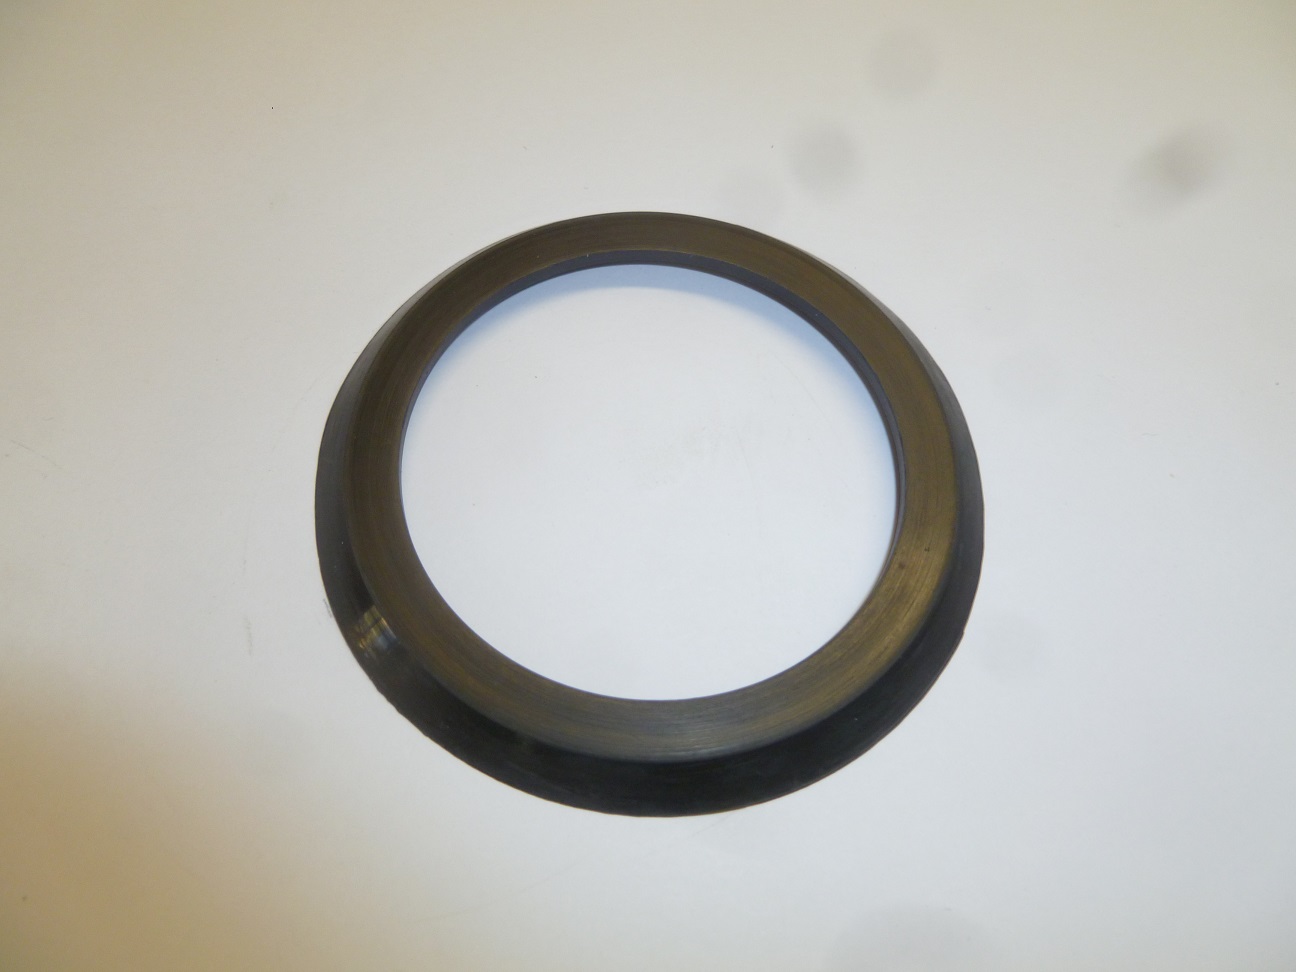 Прокладка фильтра воздушного KM170/Air element seal gasket